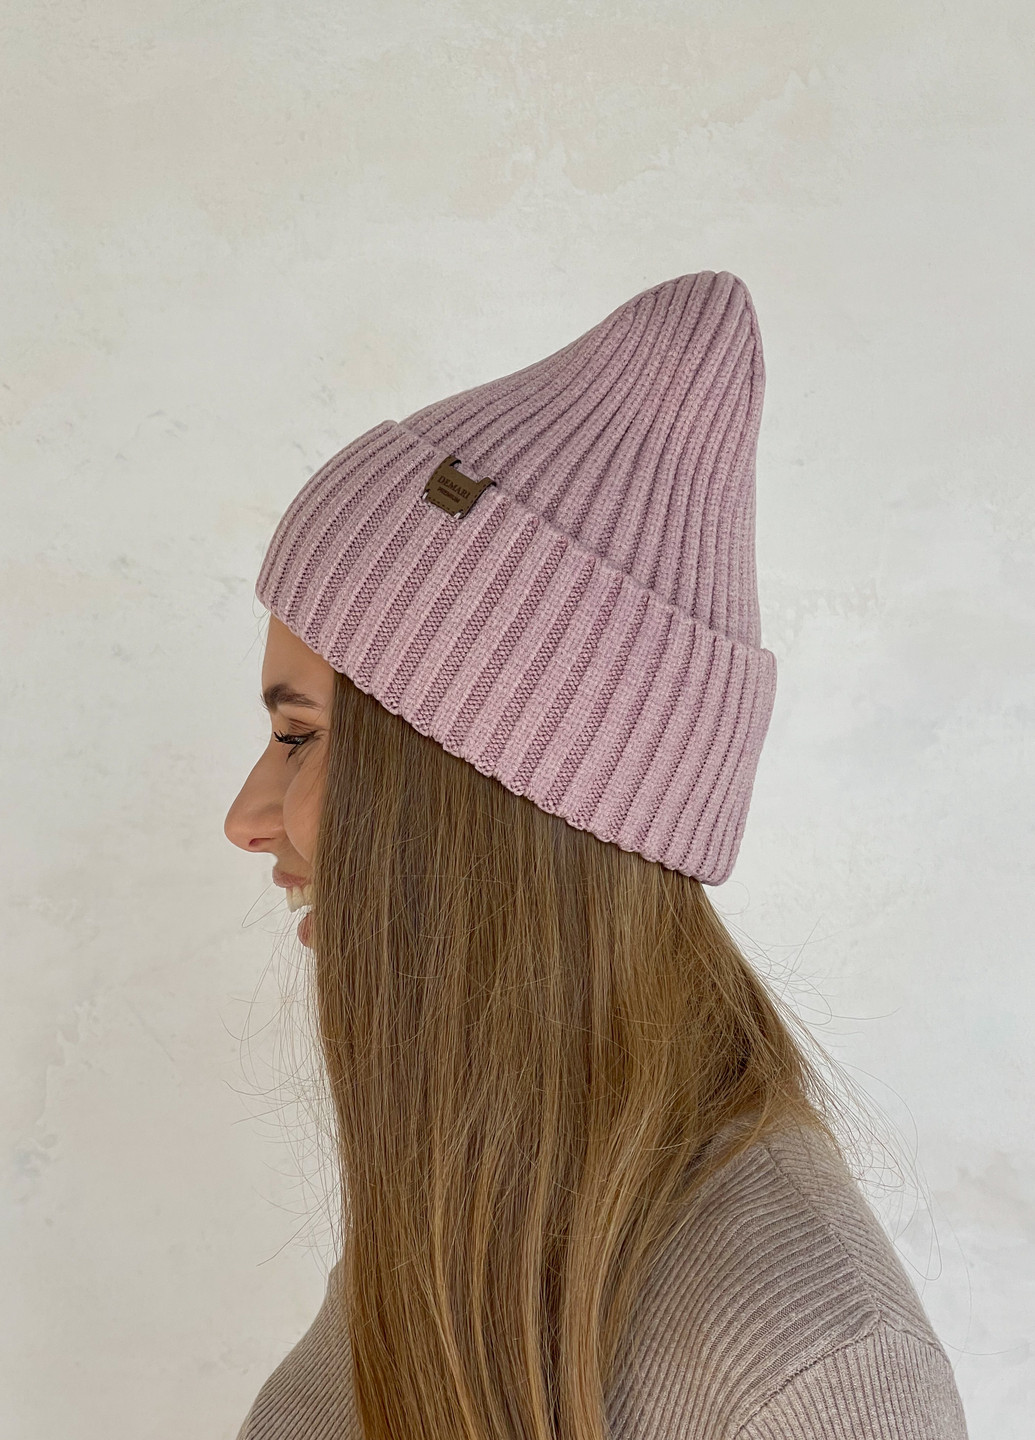 Теплая зимняя кашемировая женская шапка с отворотом на флисовой подкладке 500121 DeMari шерри (263508377)